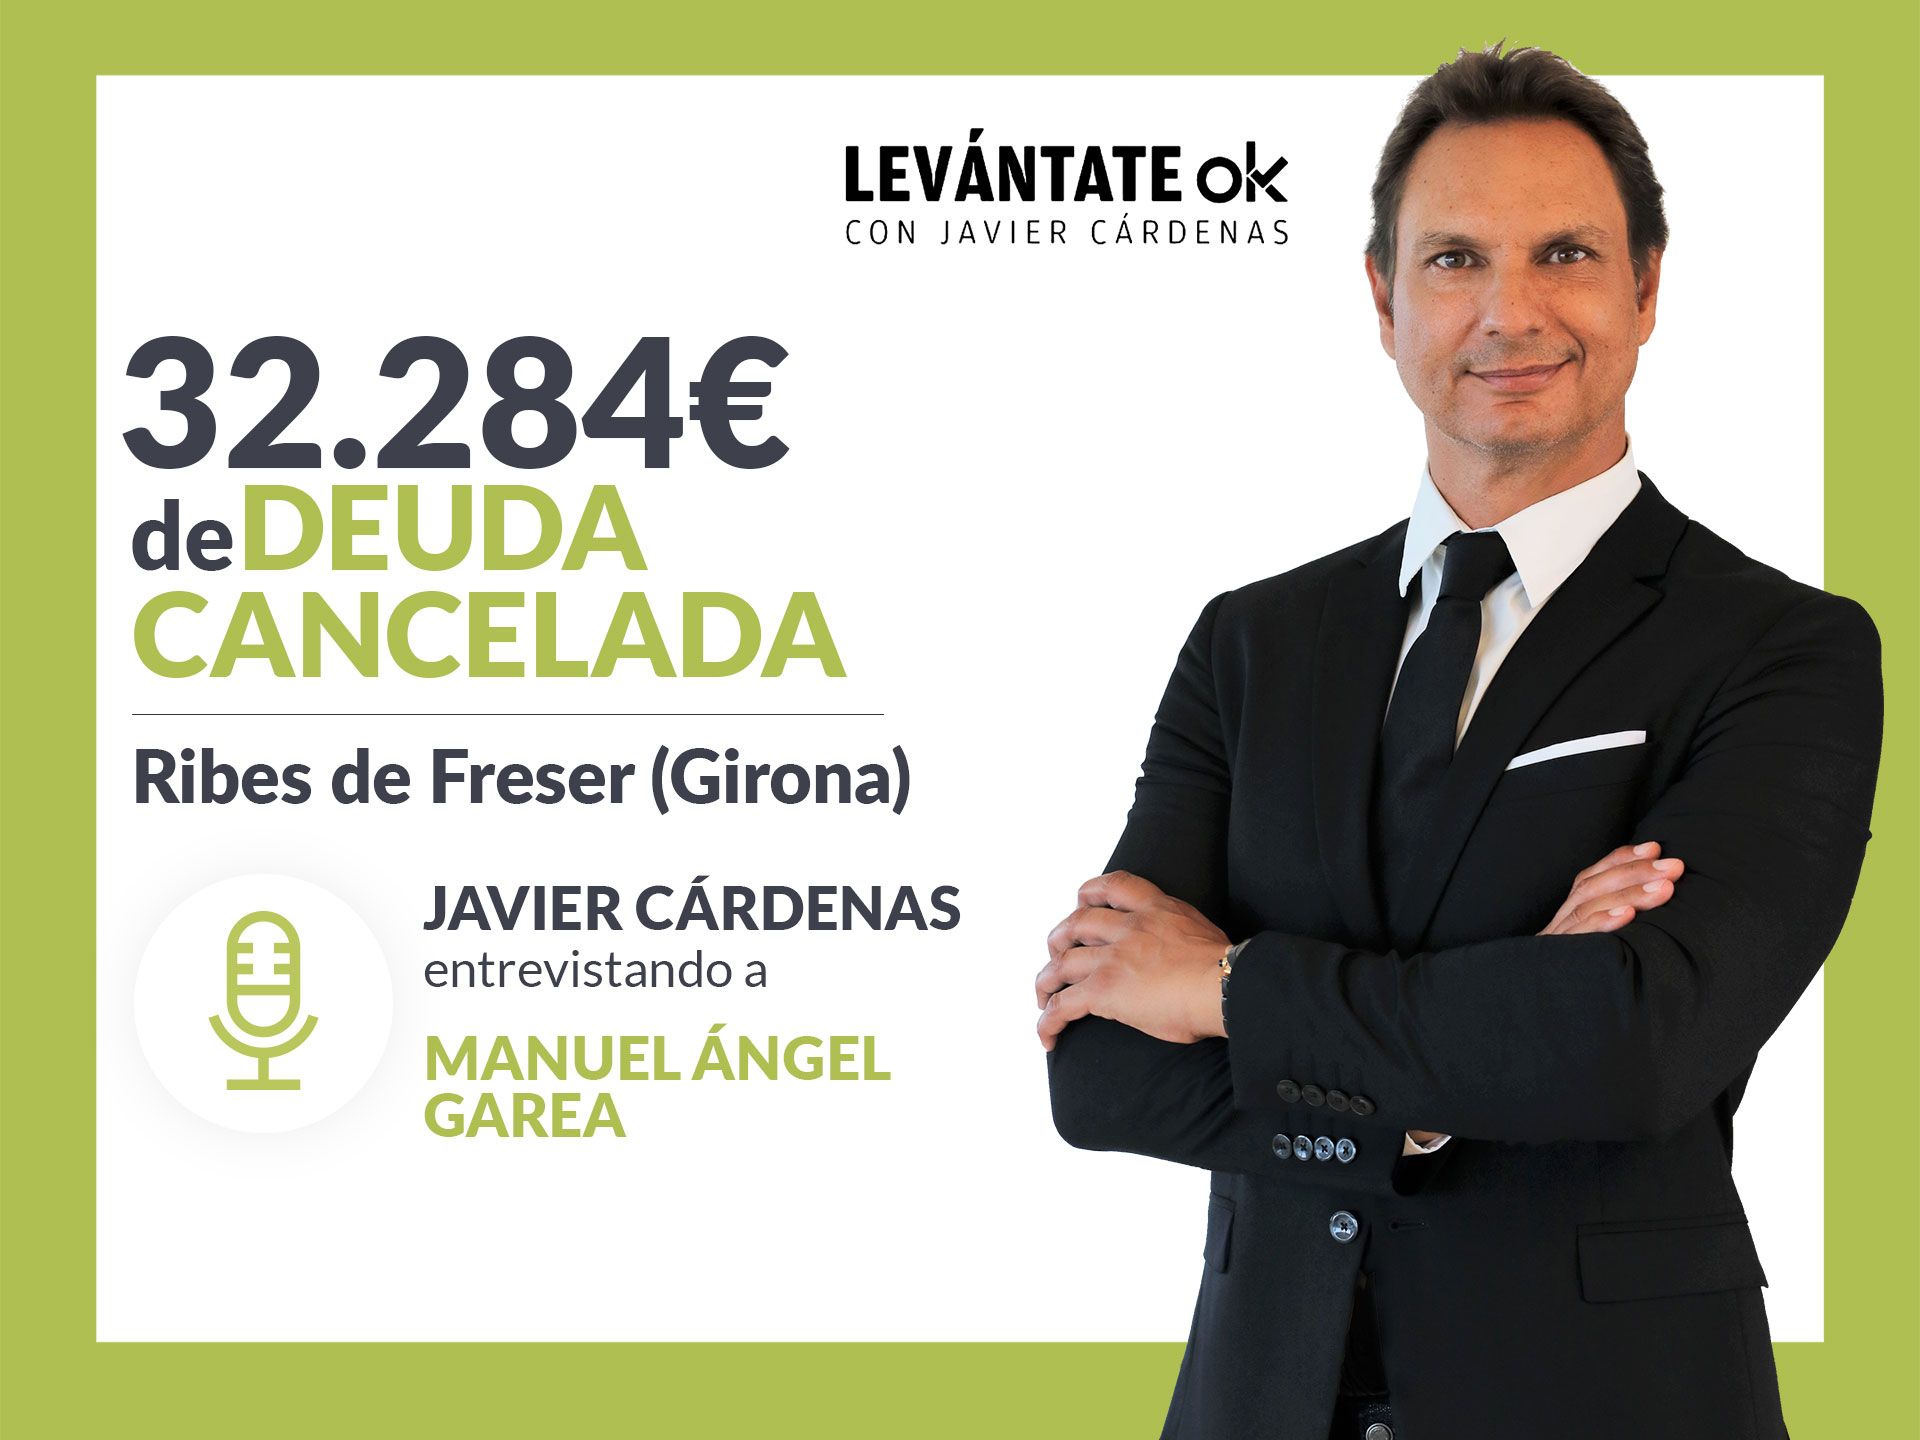 Repara tu Deuda Abogados cancela 32.284? en Ribes de Freser (Girona) con la Ley de Segunda Oportunidad 